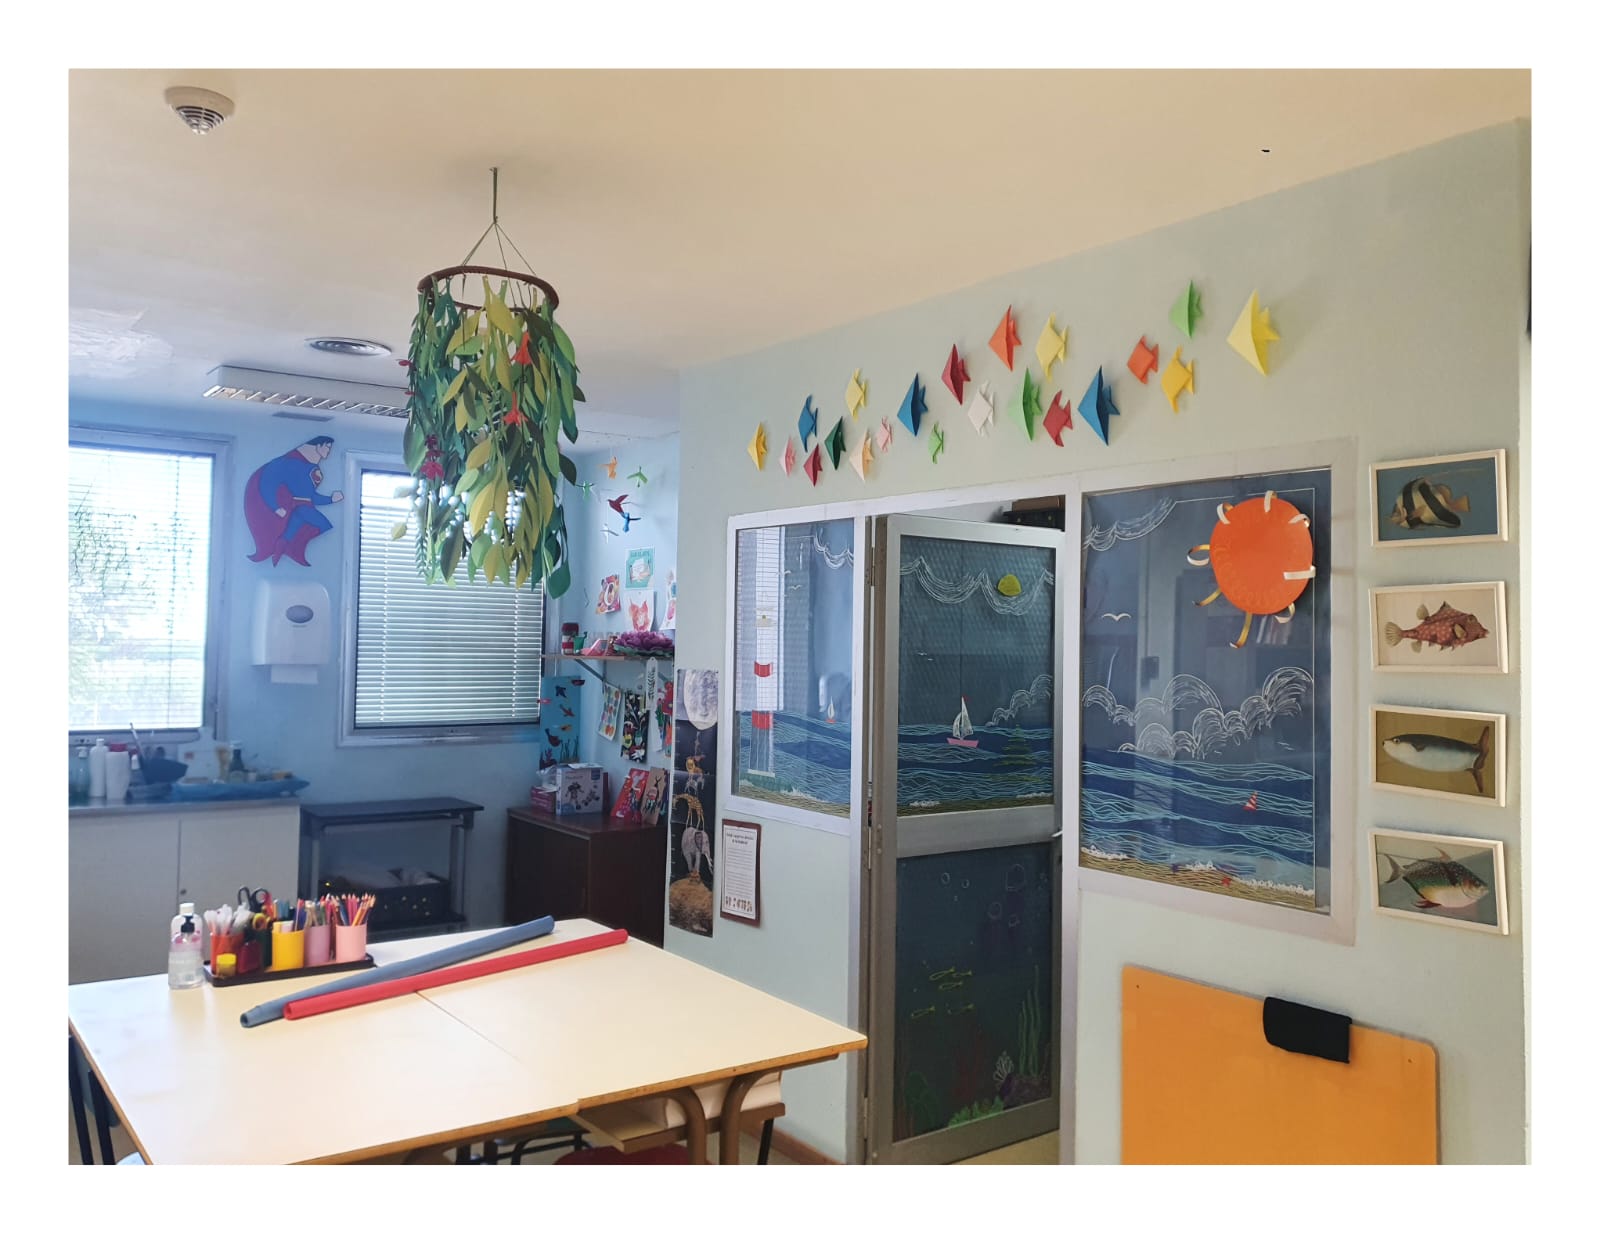 Se ve el aula exterior, ambientada con manualidades y imágenes marinas y el acceso al aula interior